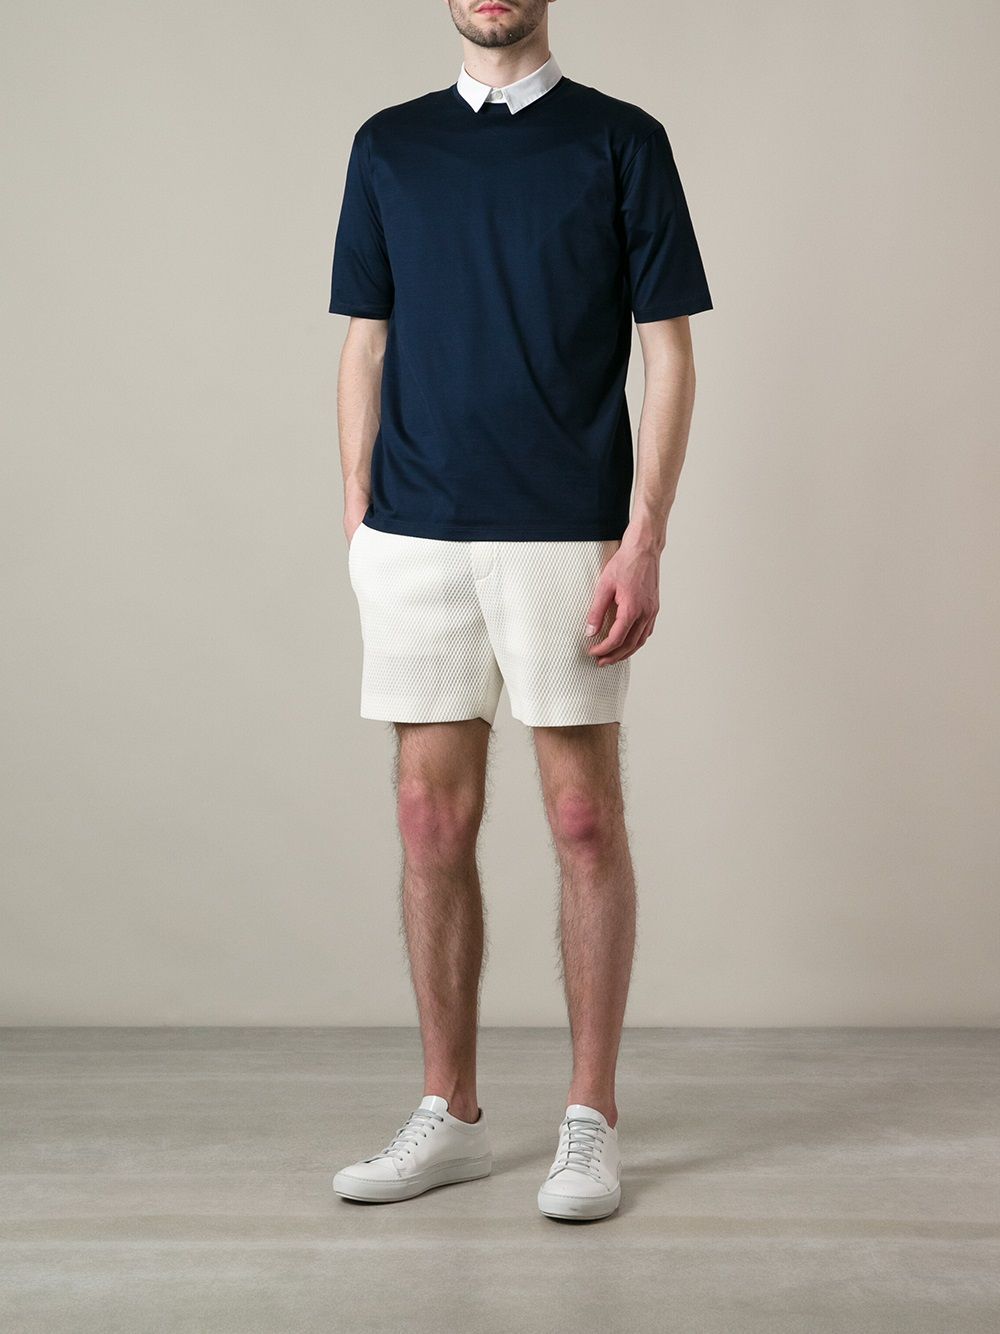 Lyst - Neil Barrett Jacquard Track Shorts in White for Men